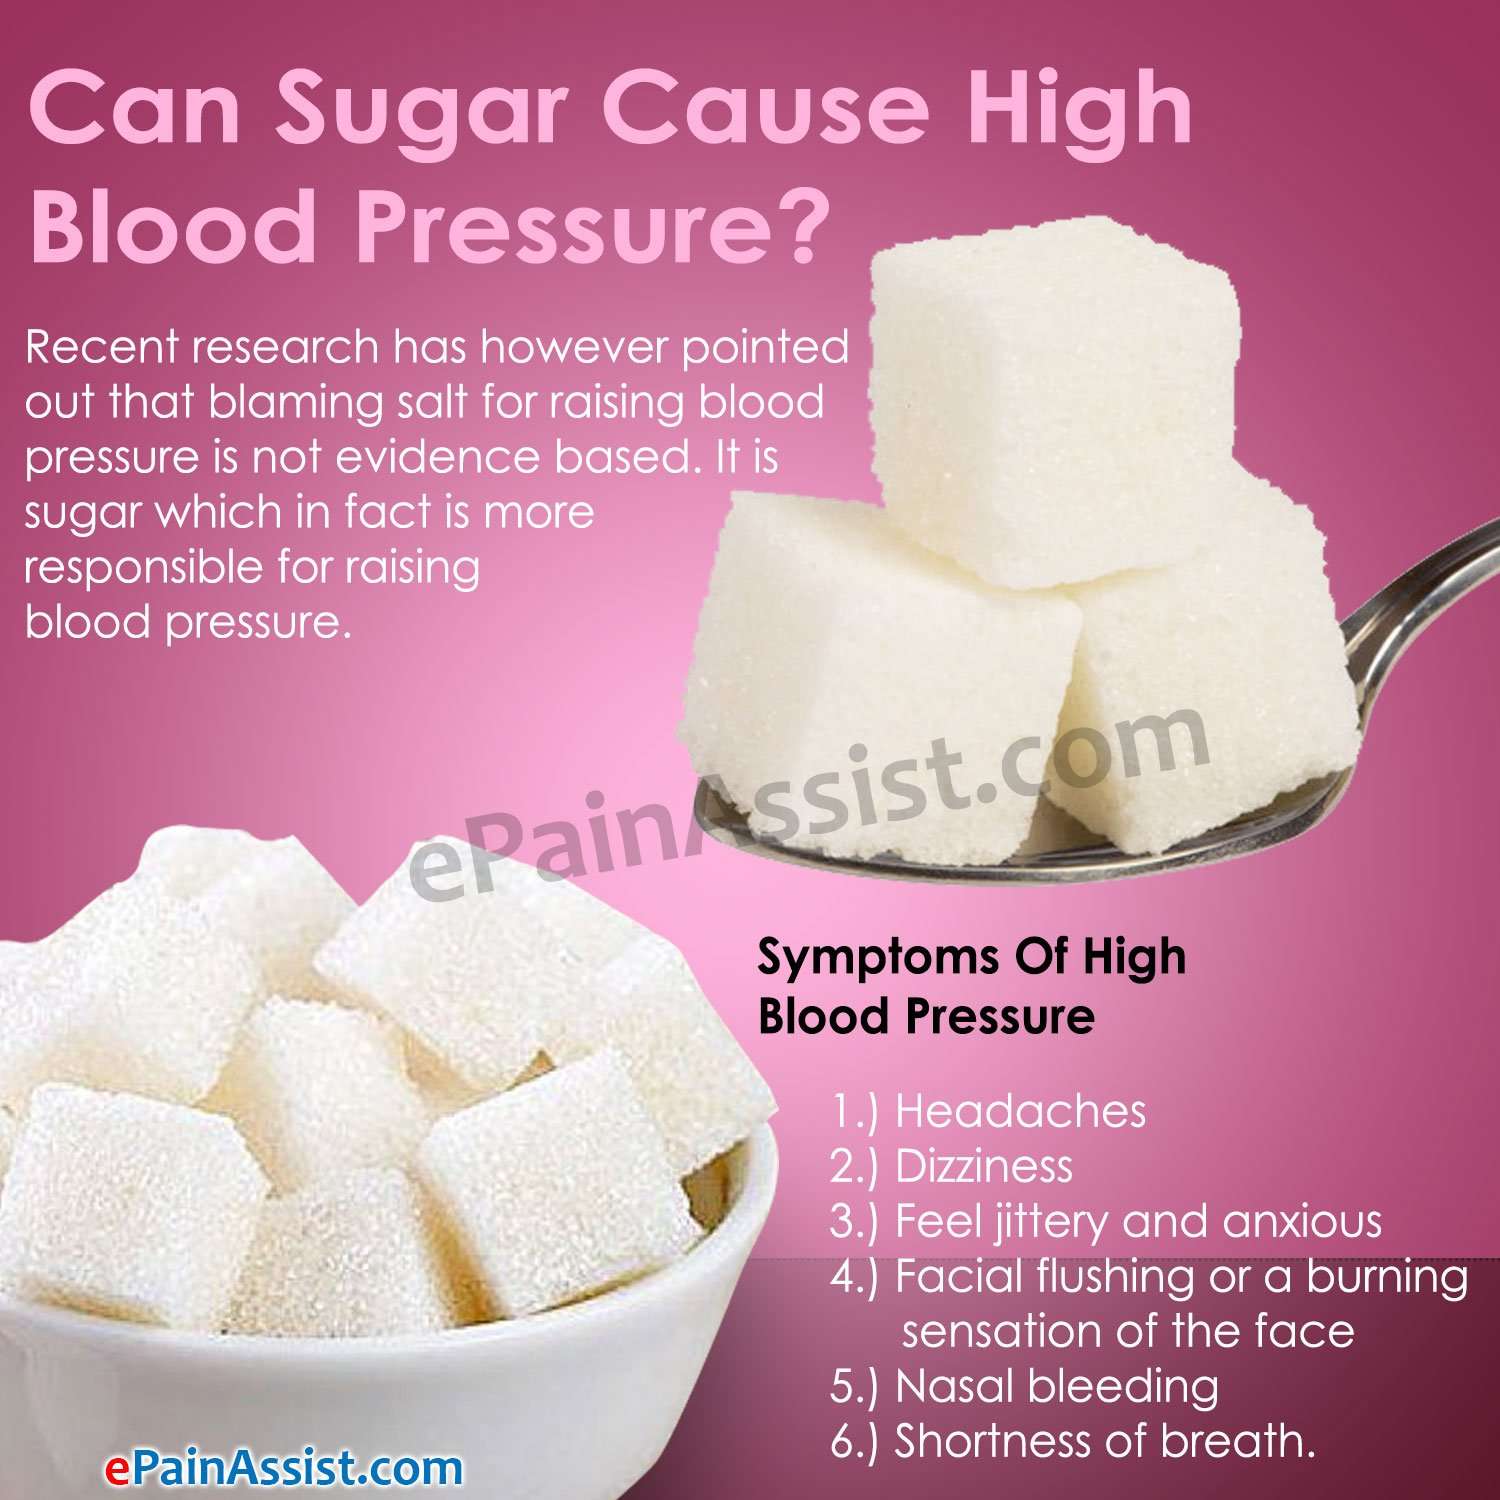 Can Sugar Cause High Blood